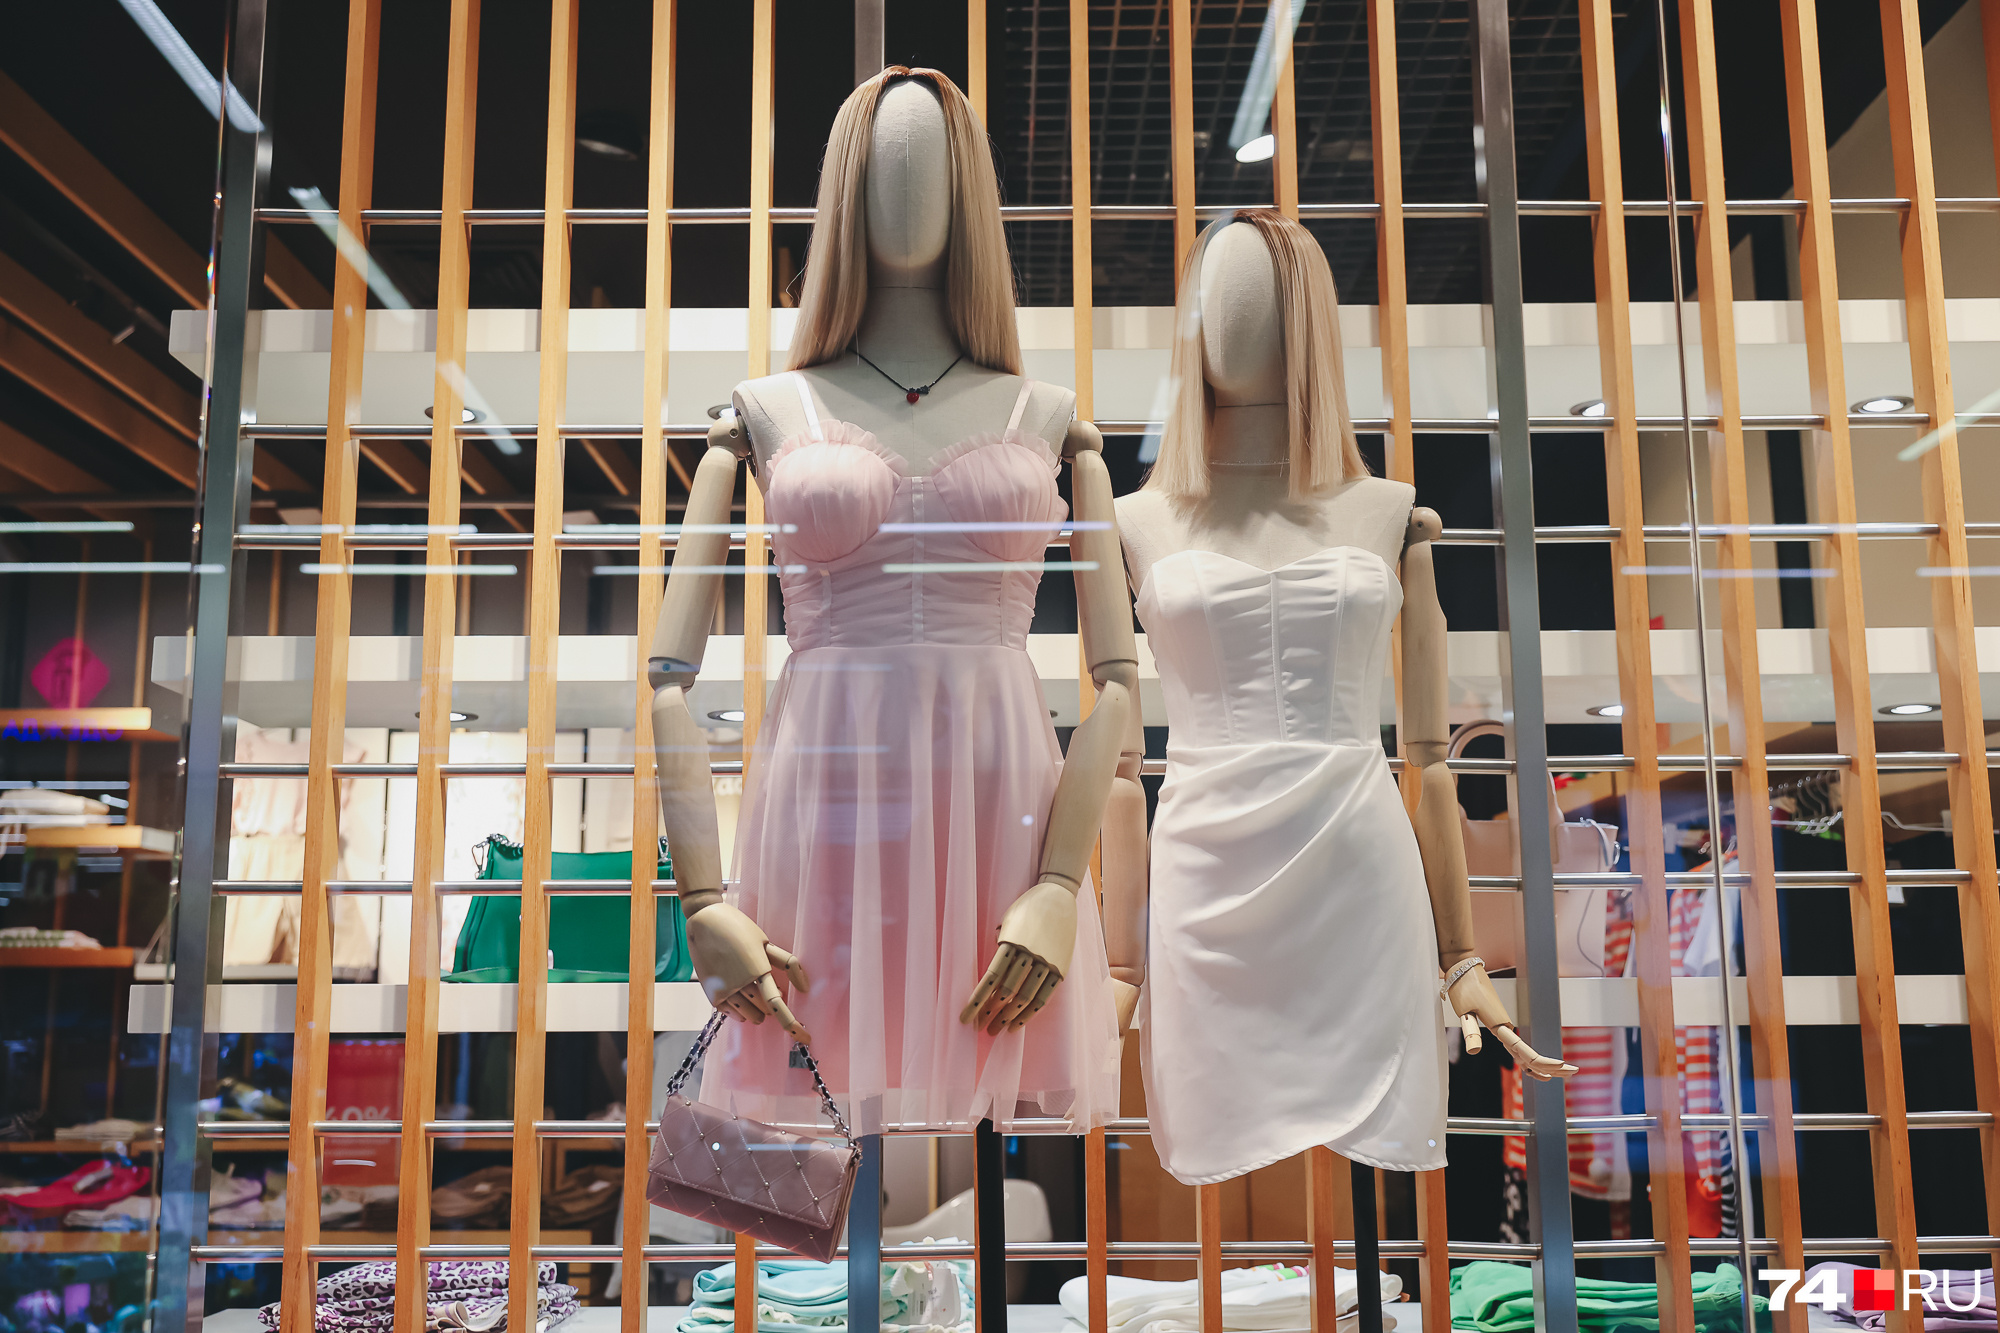 Розовый и молочный — самые актуальные сейчас оттенки. Эти платья стоят 4 тысячи 490 рублей